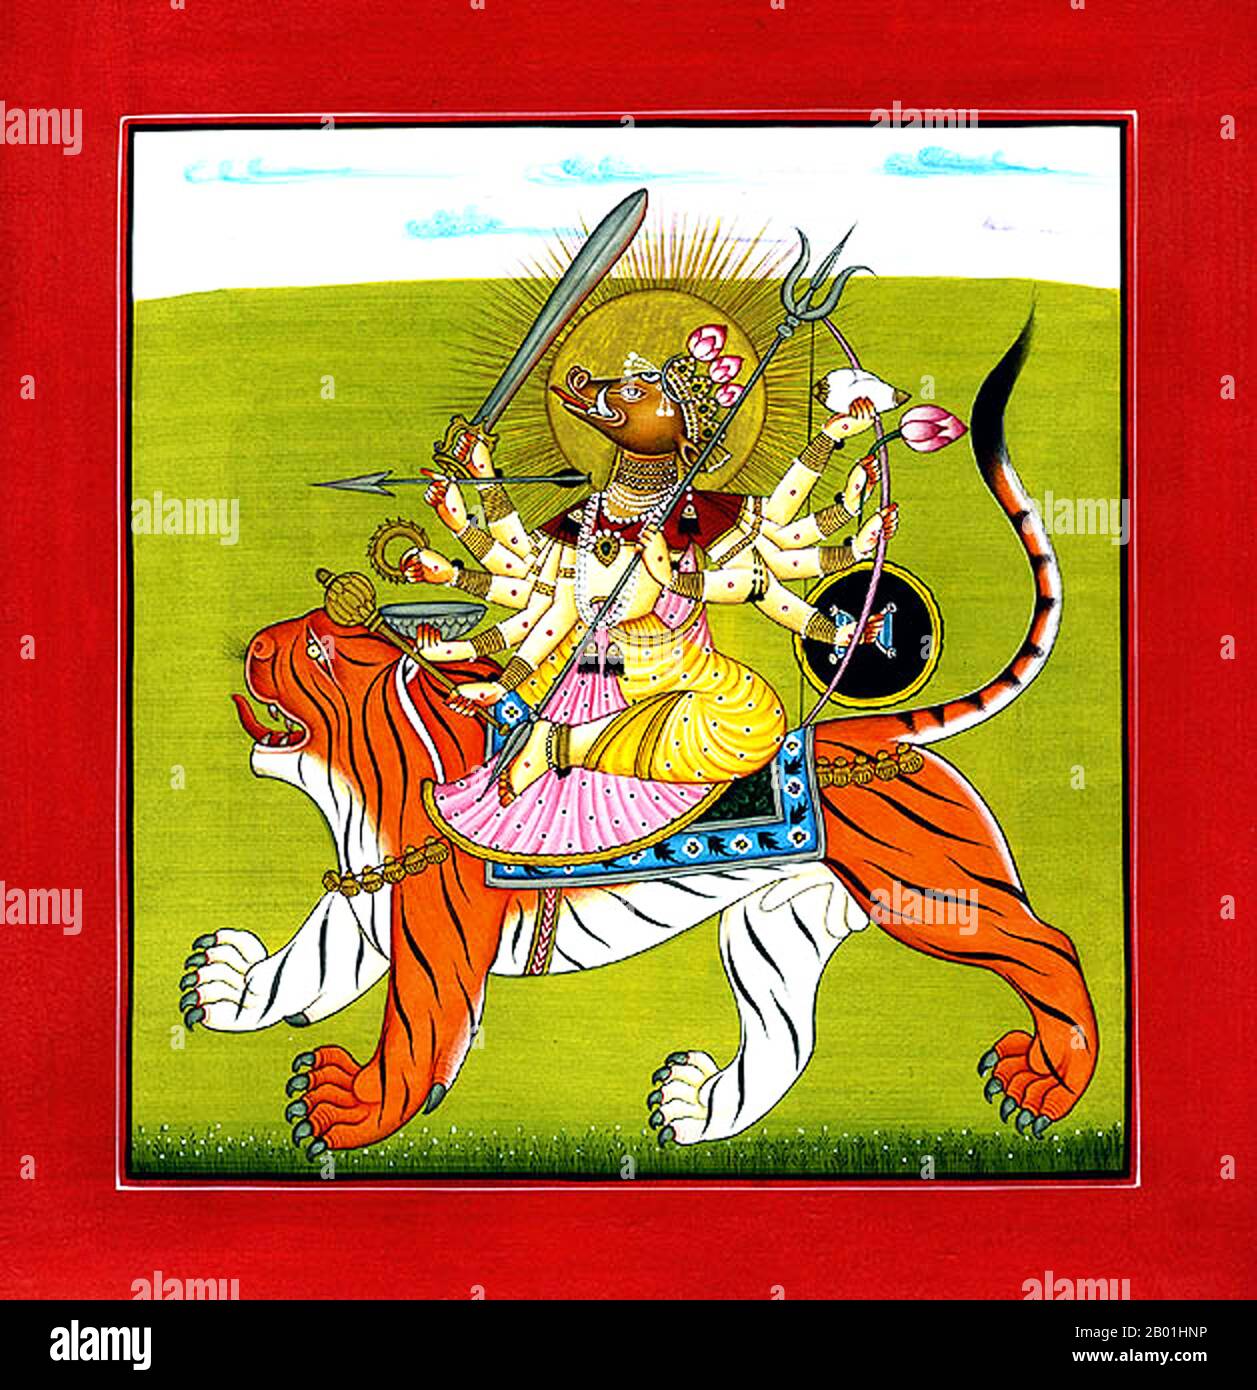 India/Nepal: La dea indù Varahi, tipicamente rappresentata con la testa di un cinghiale e cavalcando una tigre. Acquerello dipinto di Kripal di Nurpur (fl. 1660-1690), c. 1660-1670. Varahi (sanscrito: वाराही, Vārāhī) è una delle Matrikas, un gruppo di sette o otto dee madri della religione indù. Con la testa di una scrofa, Varahi è lo shakti (energia femminile, o talvolta consorte) di Varaha, l'Avatar del cinghiale del dio Vishnu. In Nepal, si chiama Barahi. Varahi è adorata da tutte e tre le principali scuole dell'Induismo: Shaktismo, Shaivismo e Vaishnavismo. Foto Stock